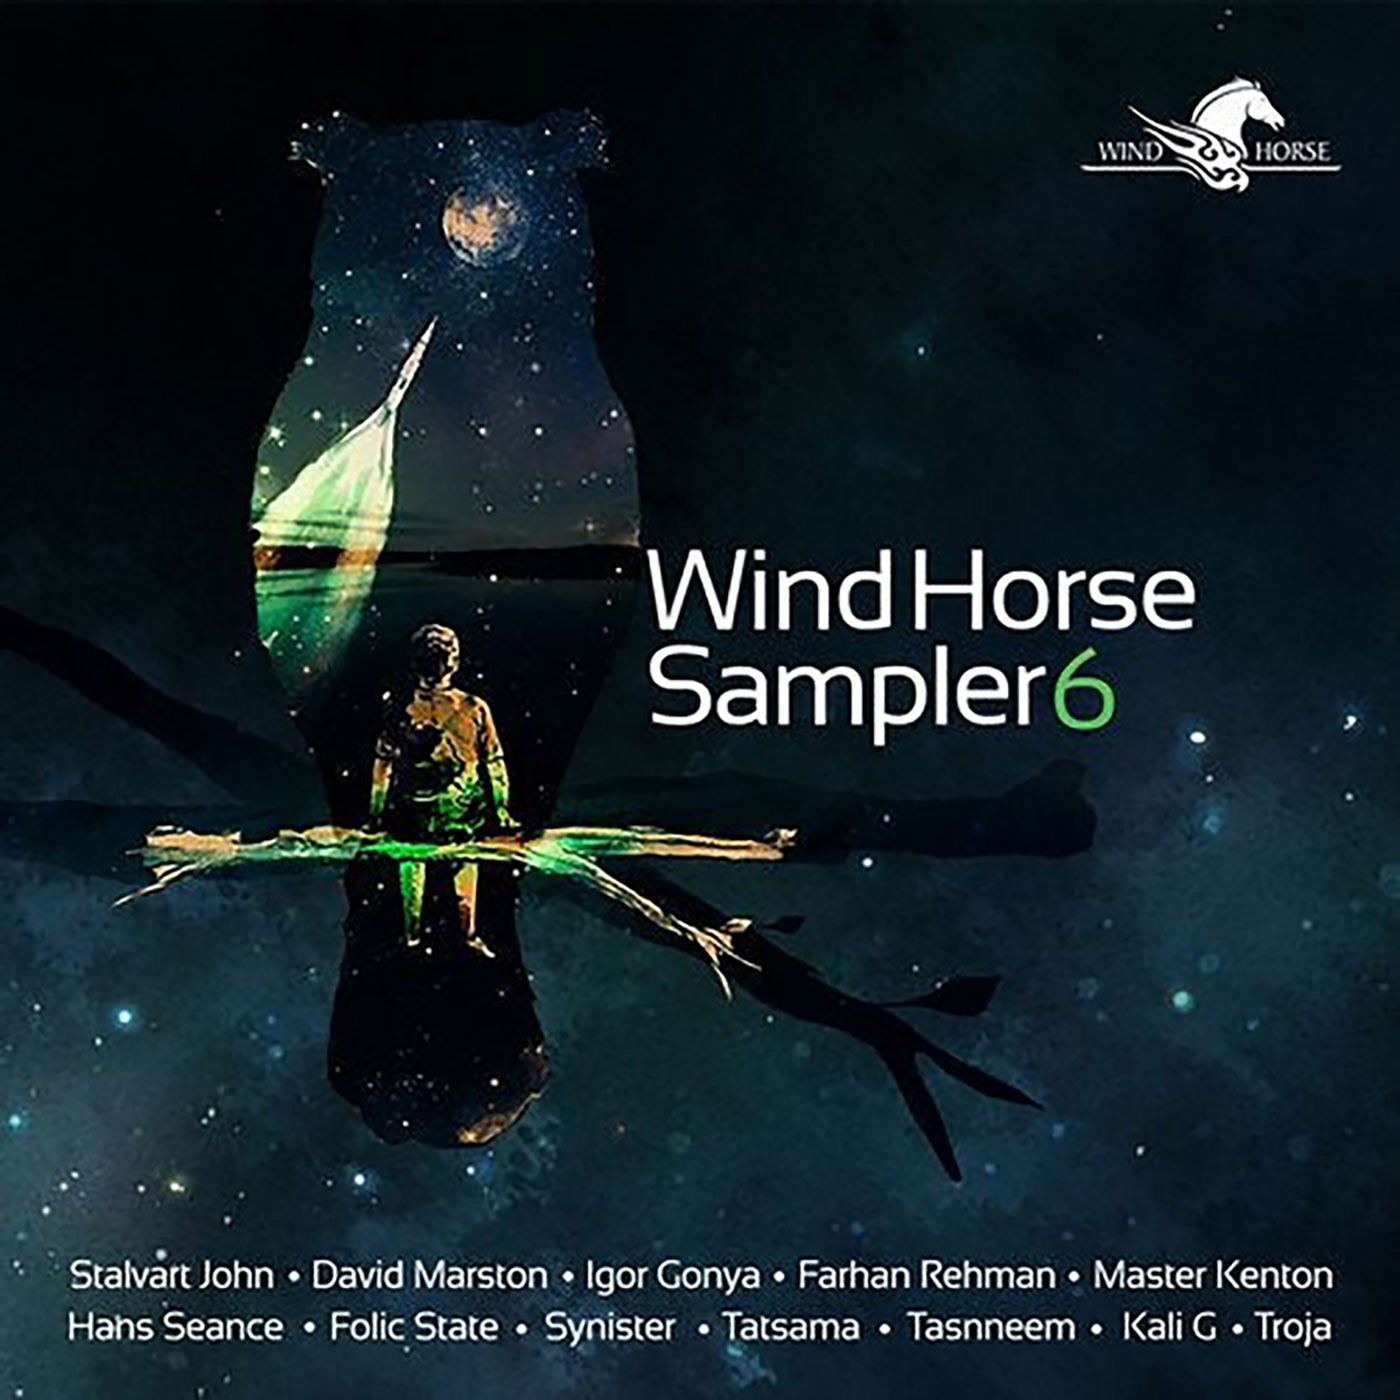 Wind Horse Sampler 06